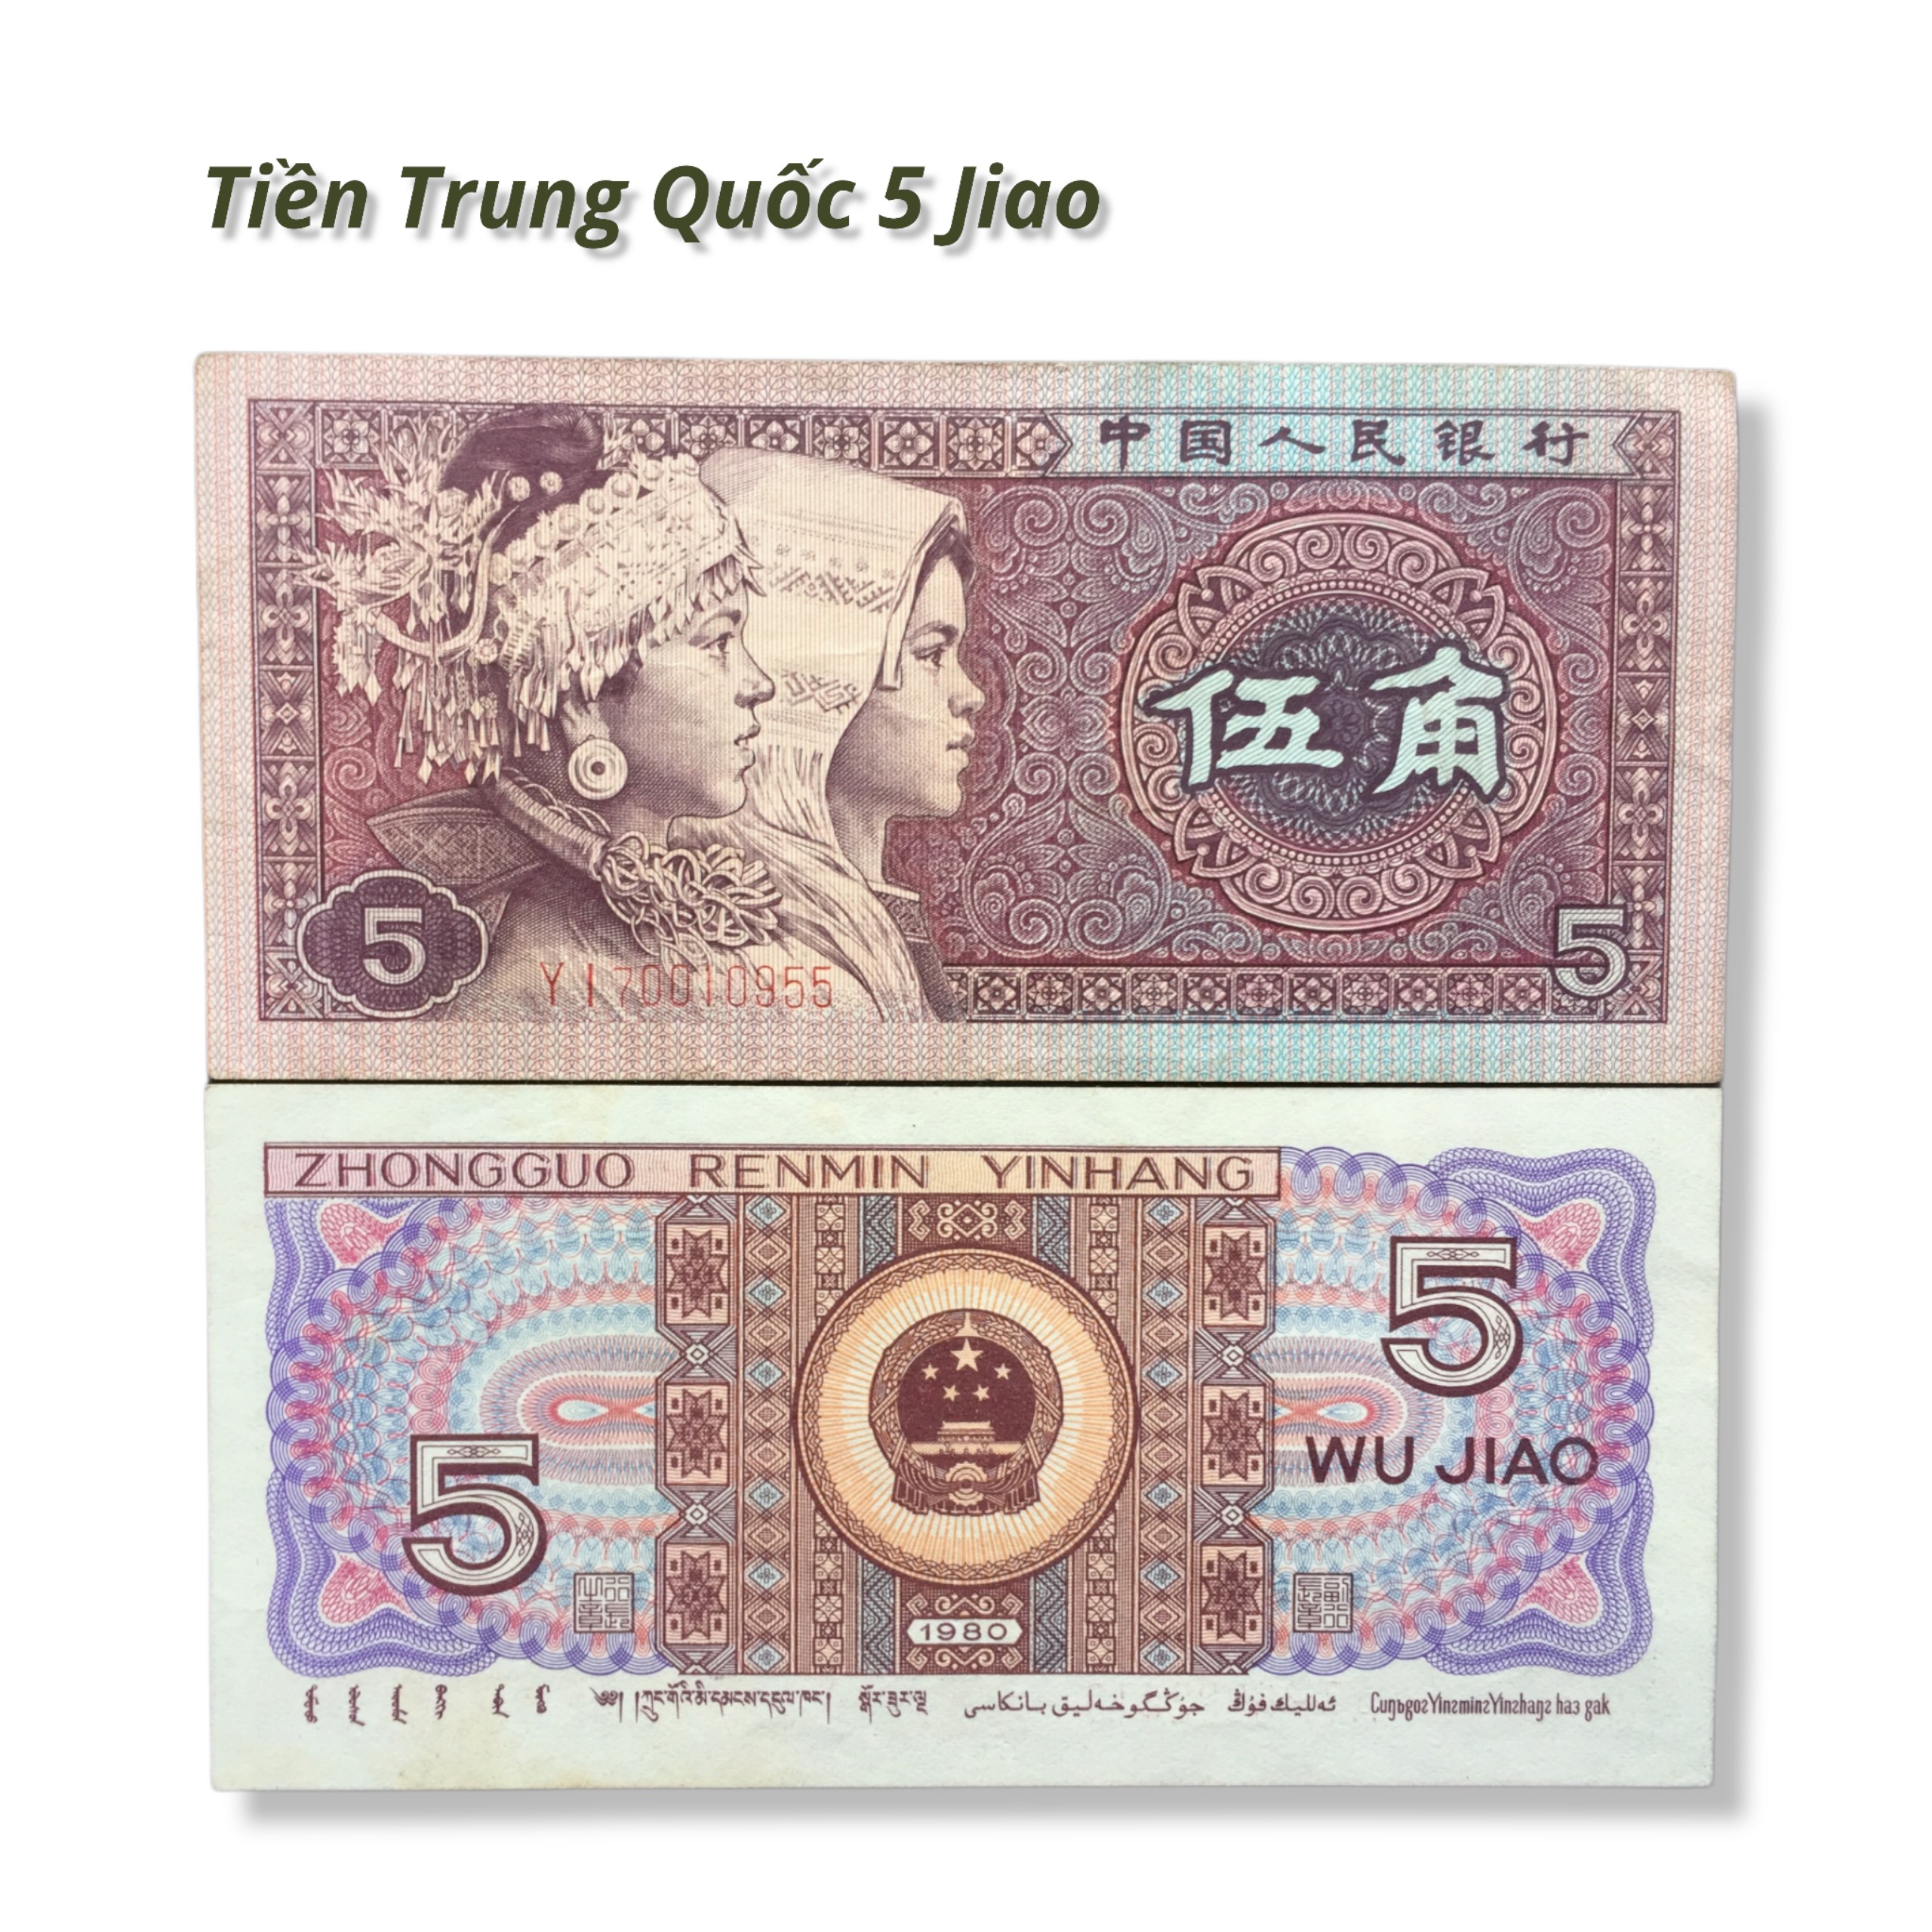 Tiền Trung Quốc xưa 5 jiao, tặng bao nilong bảo quản tiền.